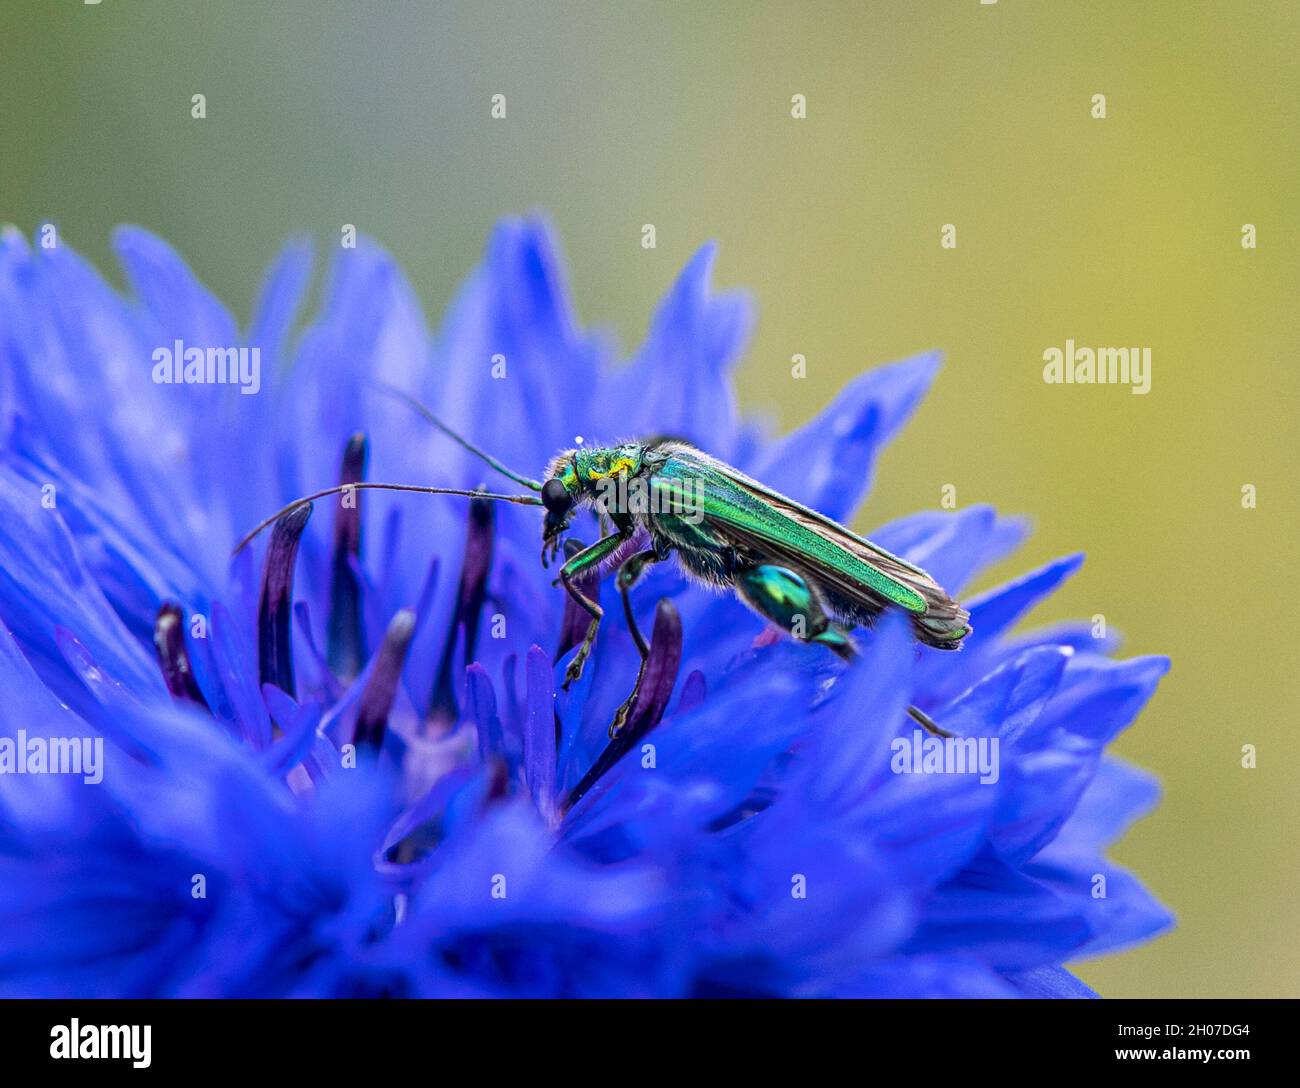 escarabajo verde metálico brillante joya sobre flor de maíz azul - imagen macro Foto de stock